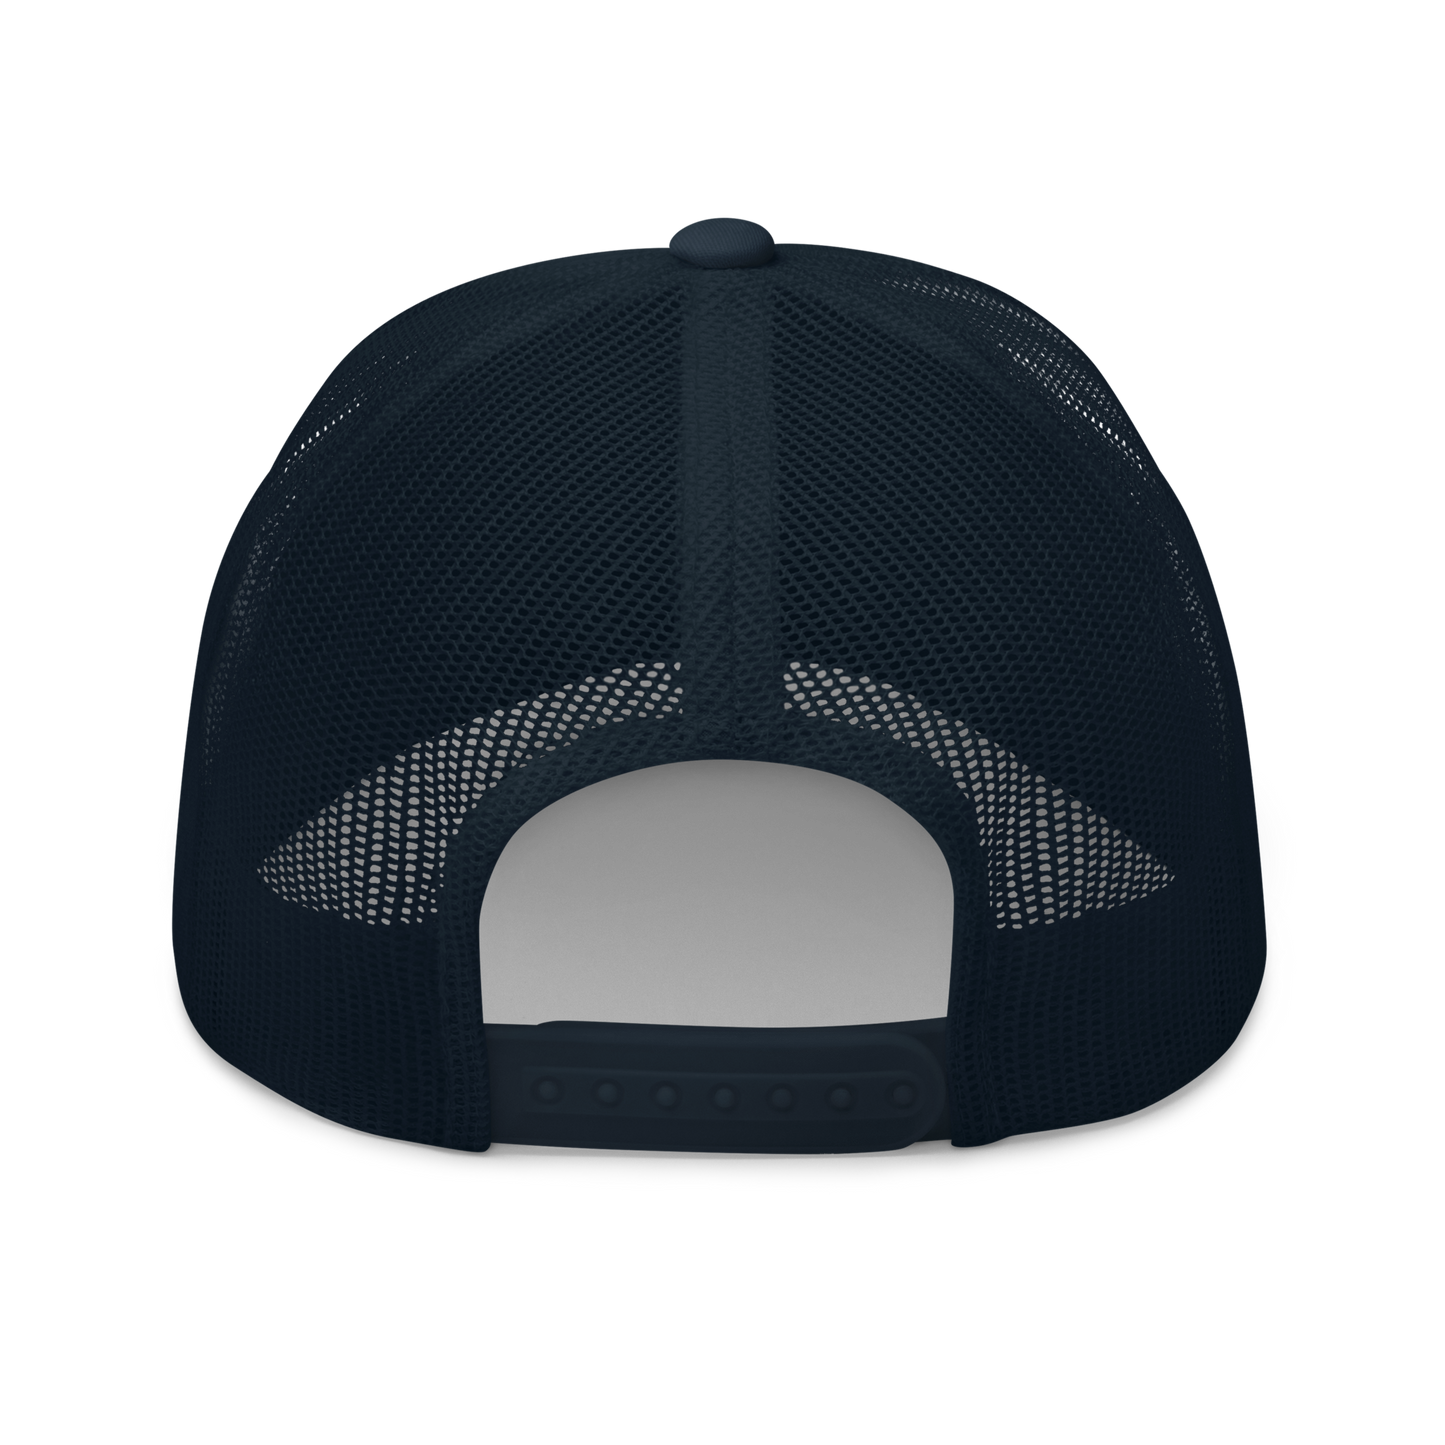 X-15 Hat